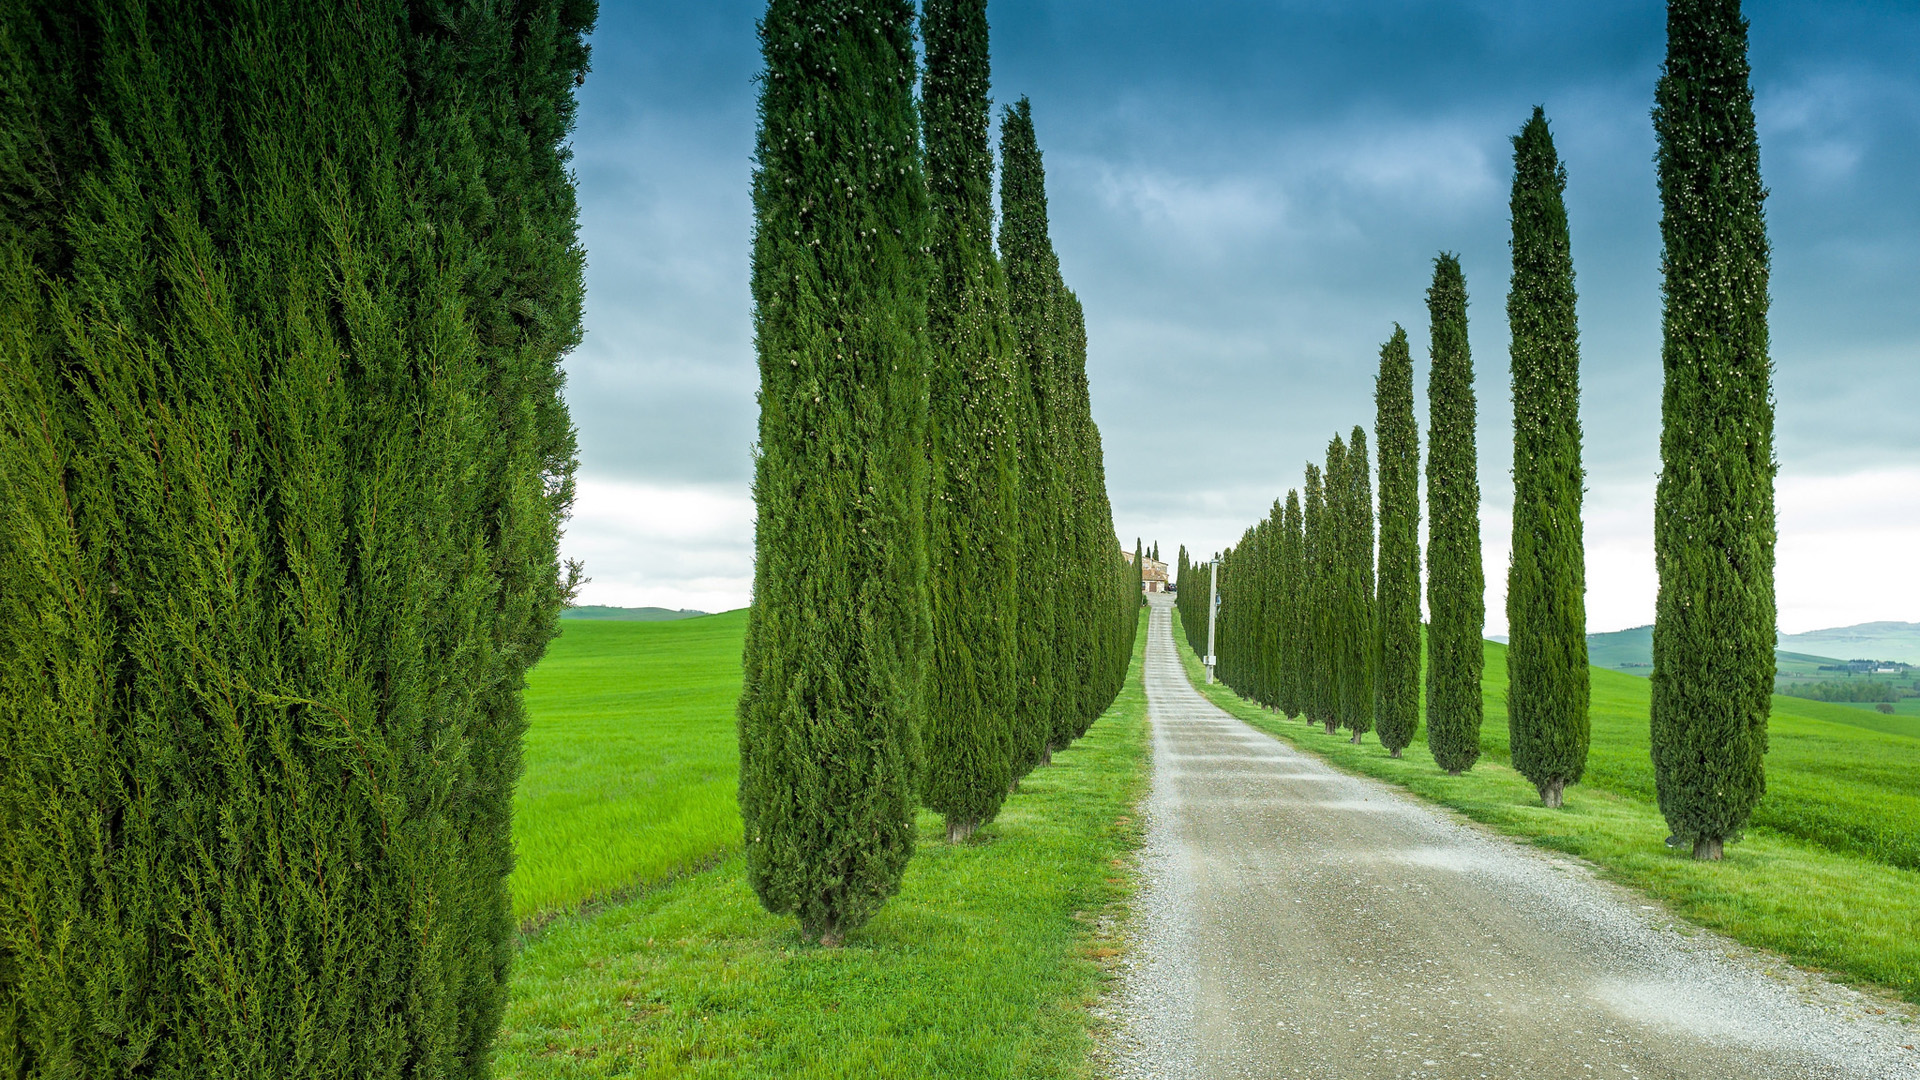 自然风景意大利,托斯卡纳,道路,田野,树木,桌面壁纸